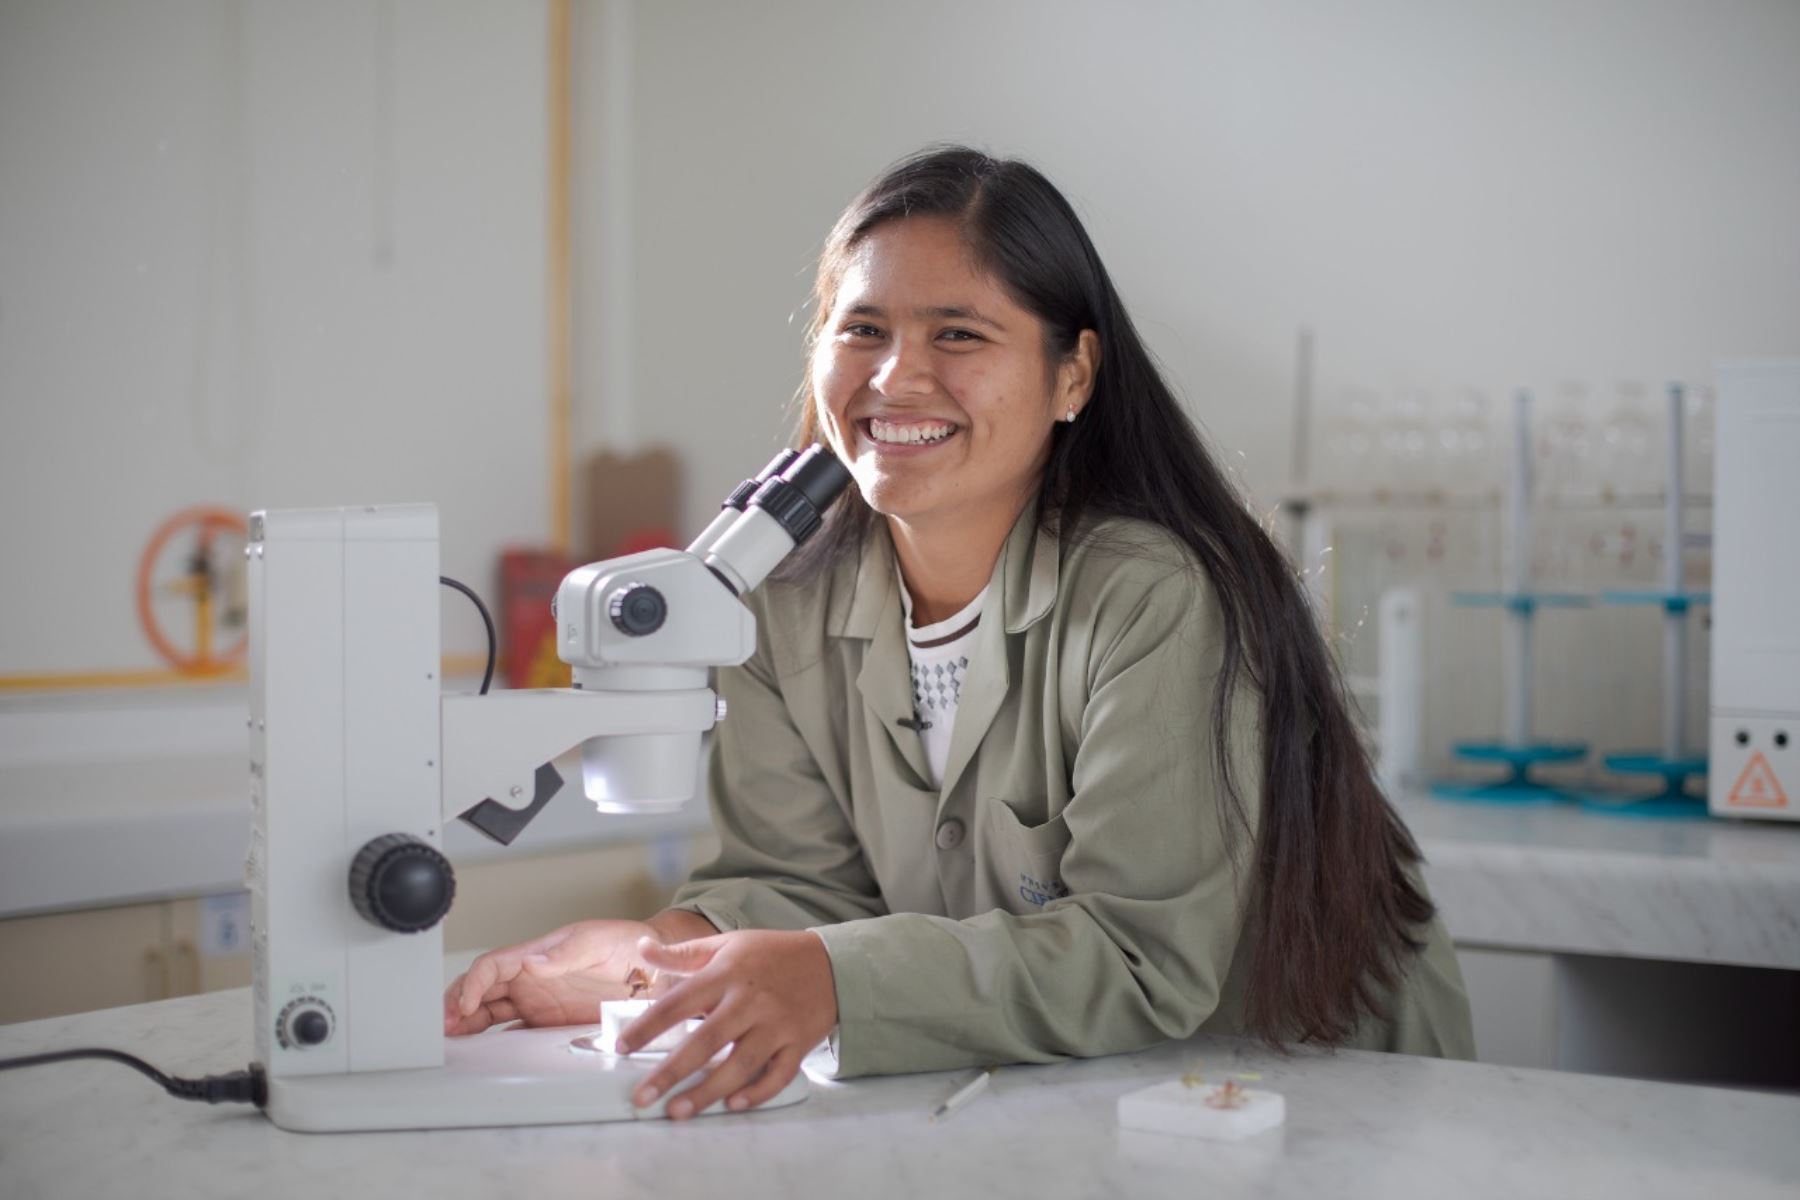 En el Perú solo el 34% de investigadores registrados son mujeres y el 65% de ellas están centralizadas en Lima.